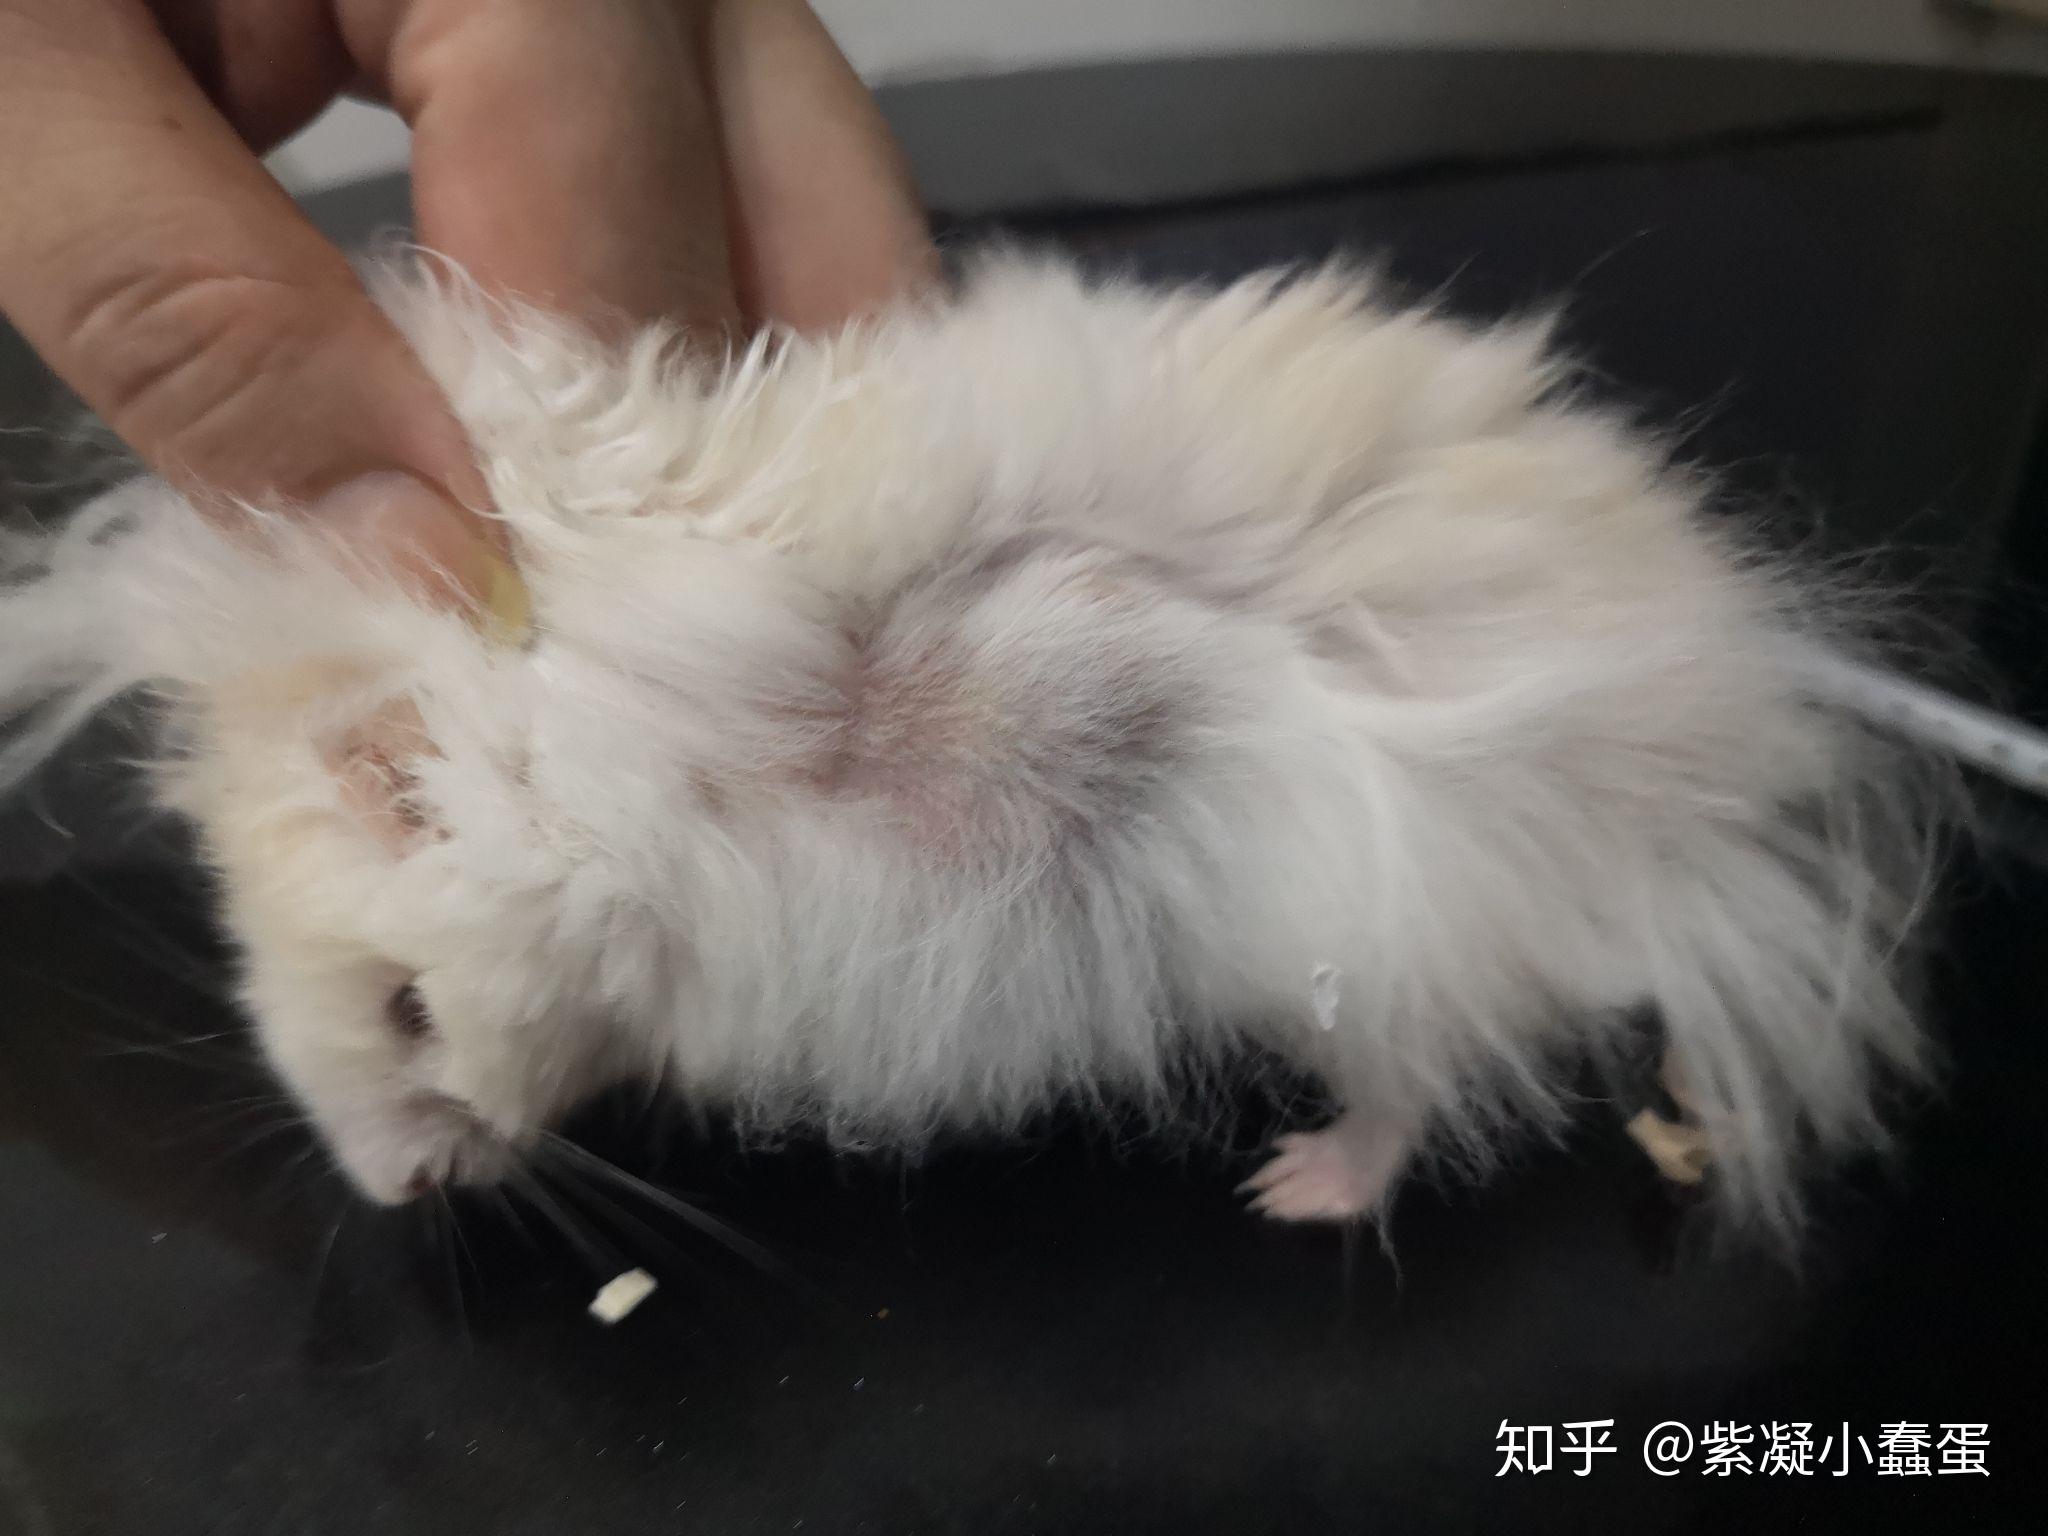 仓鼠胳膊下面的肉瘤图片